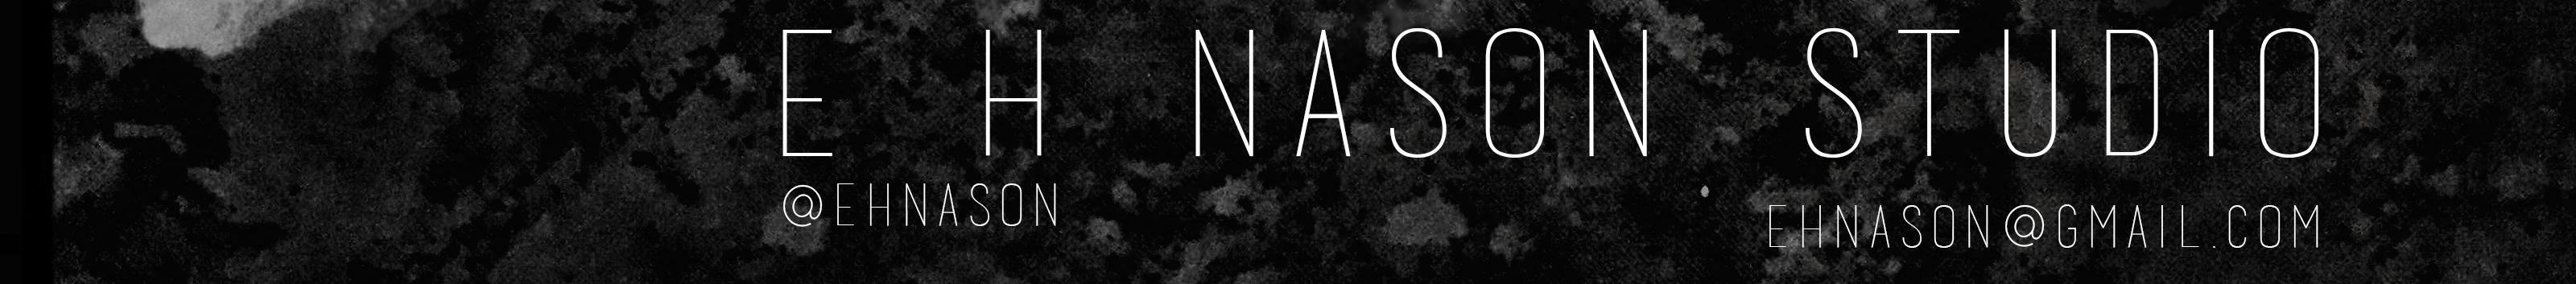 Banner de perfil de E. H. Nason